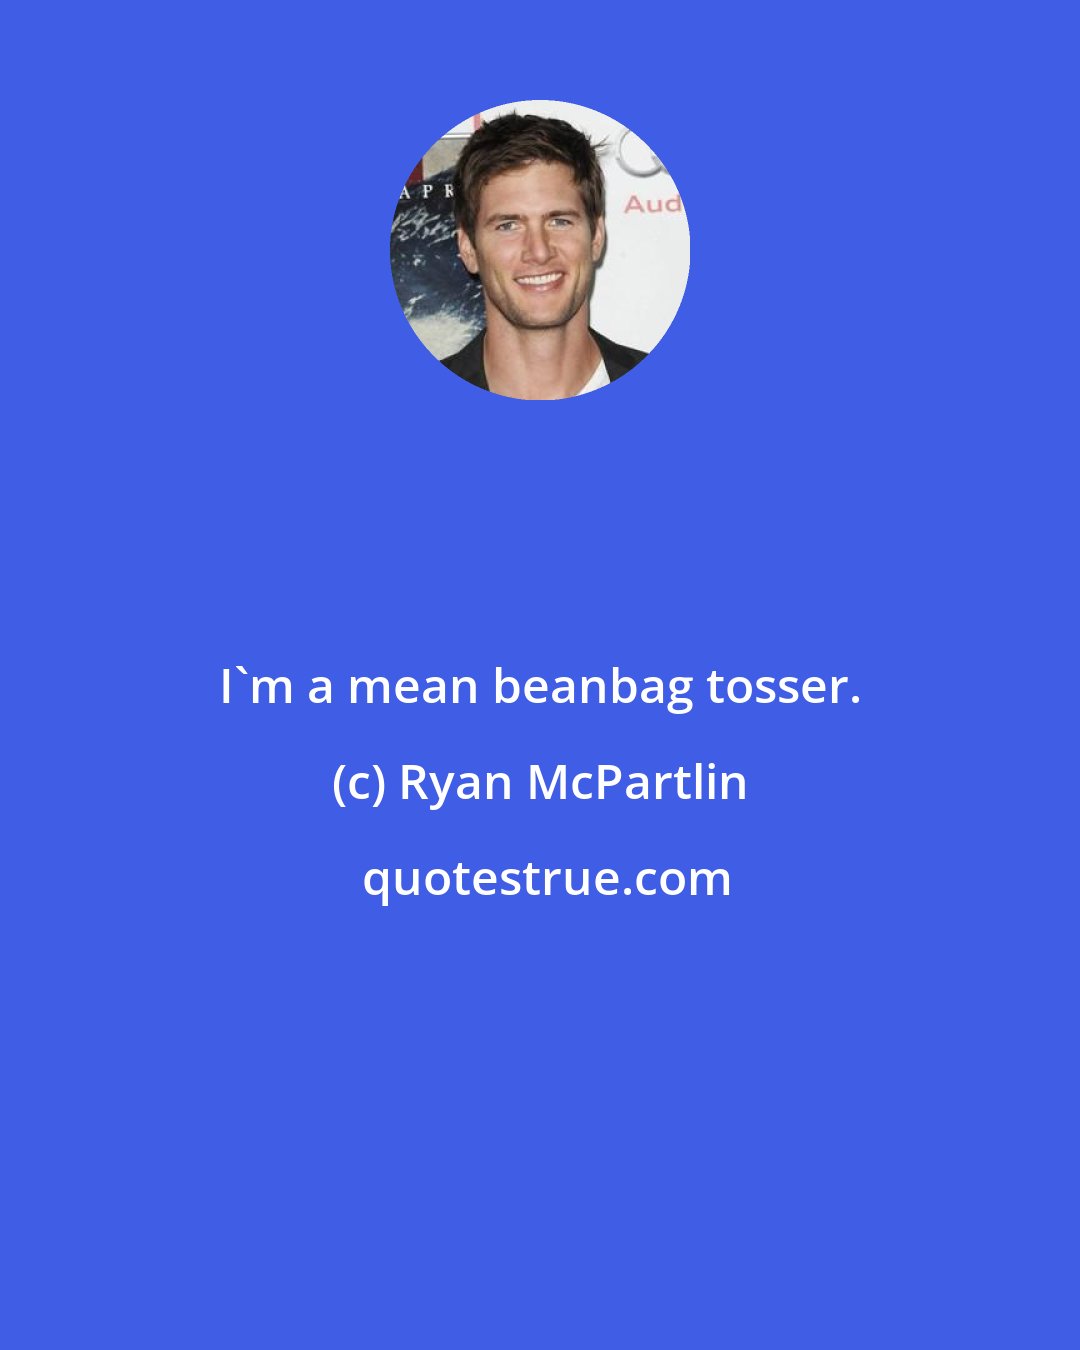 Ryan McPartlin: I'm a mean beanbag tosser.